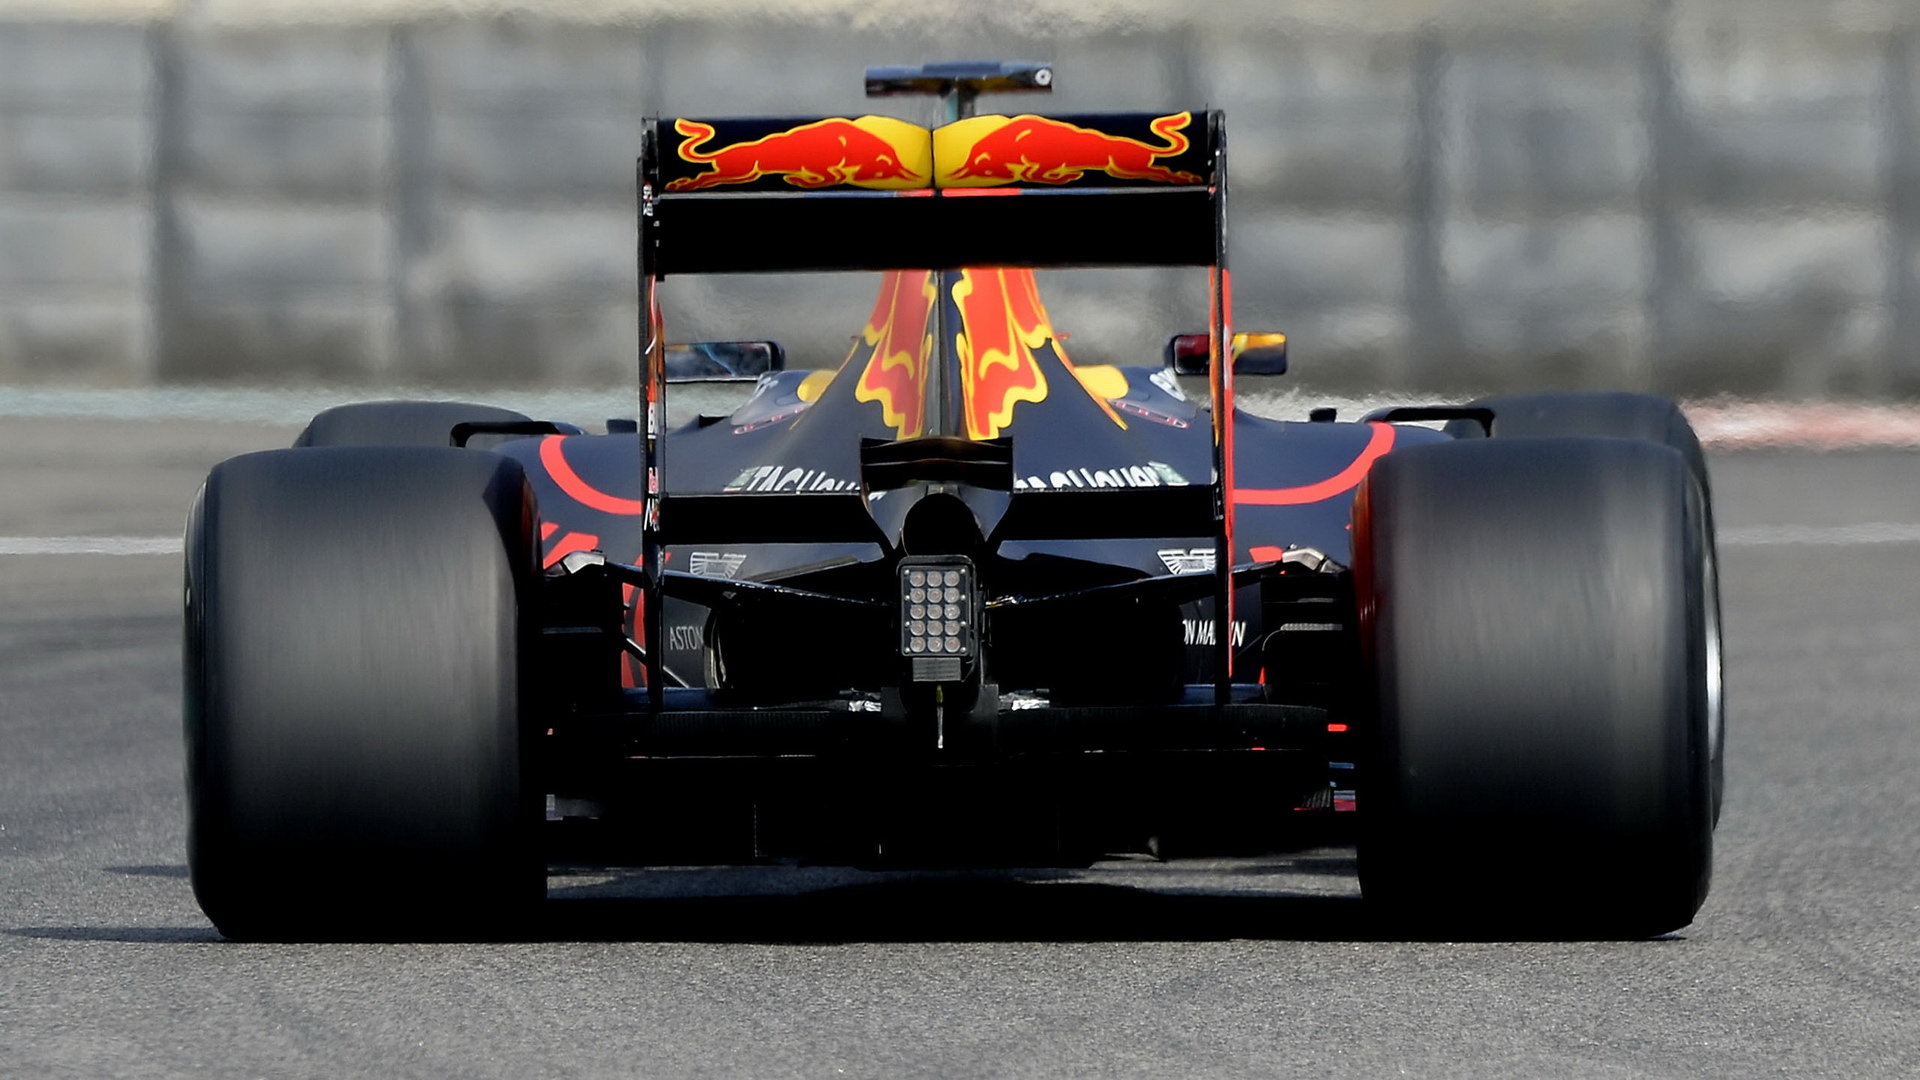 Loňský upravený Red Bull RB11 při testu s pneumatikami pro rok 2017